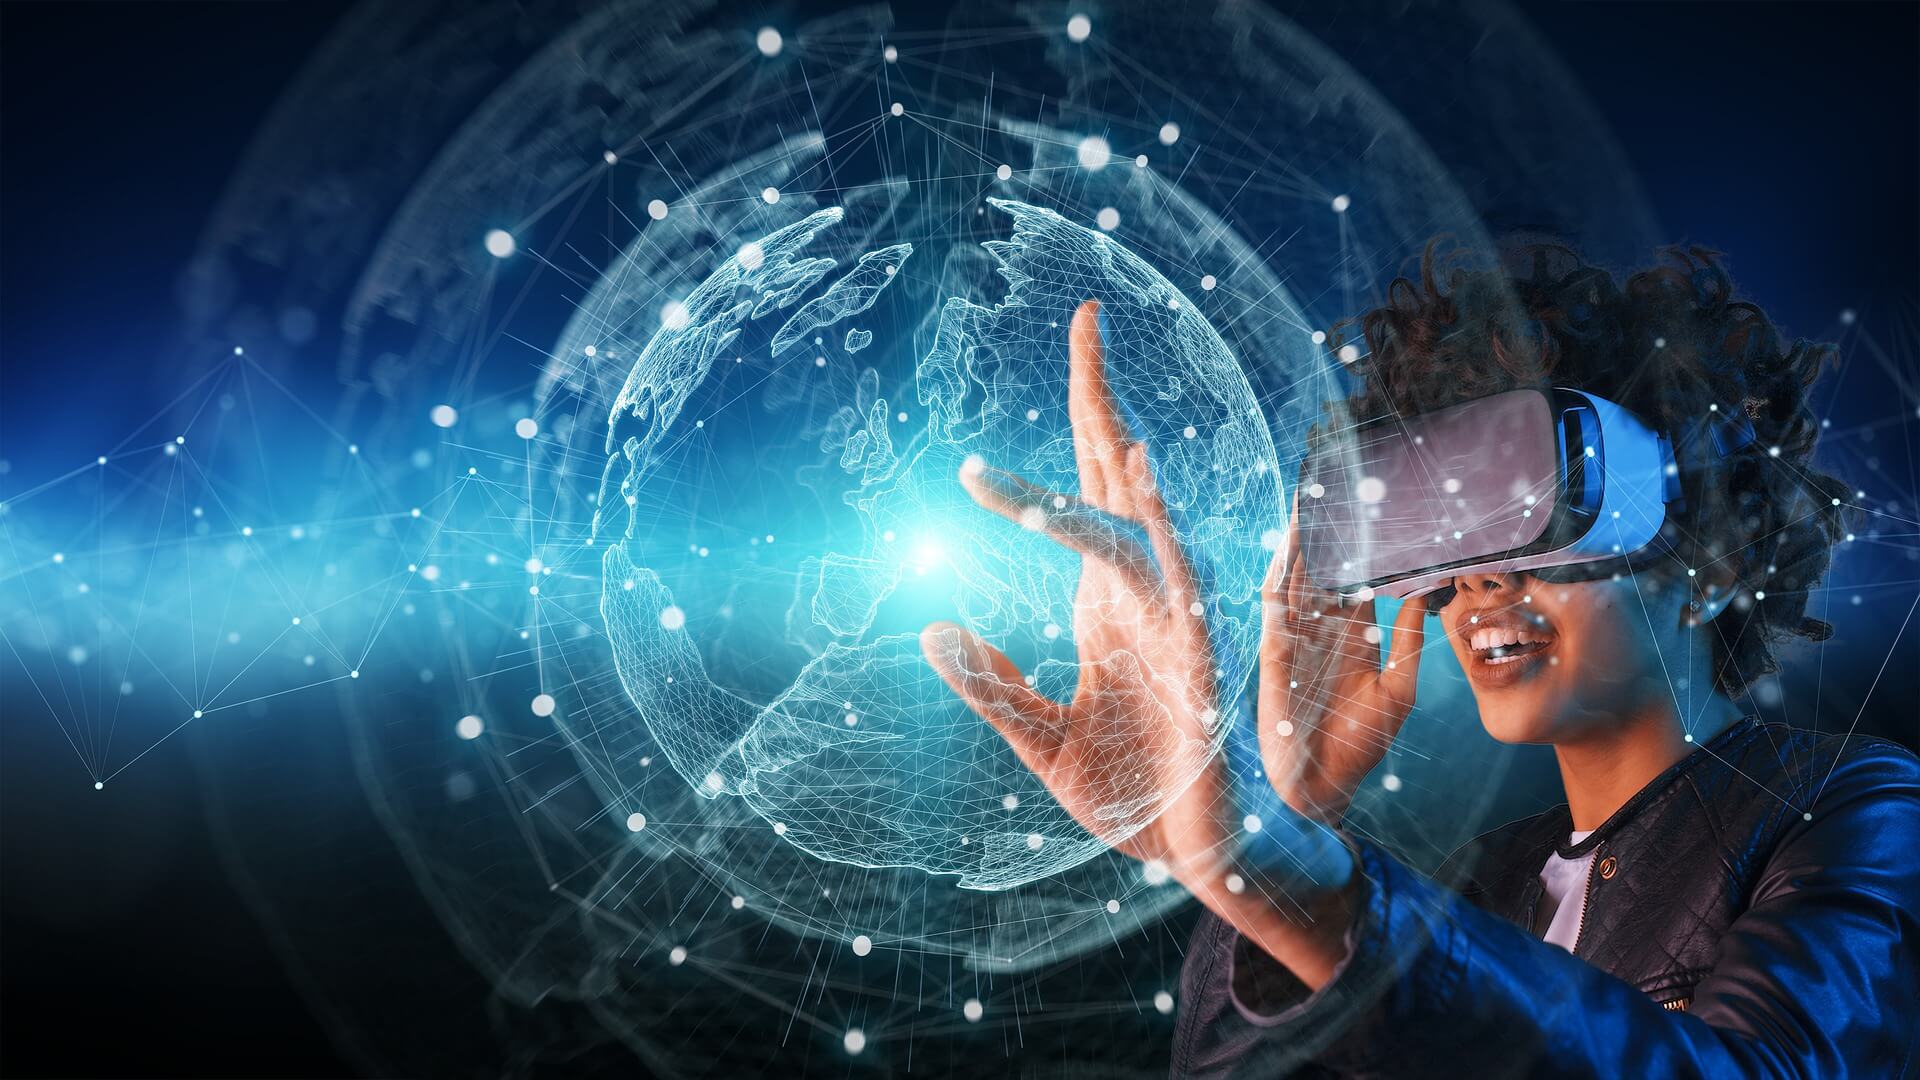 图片展示一位佩戴虚拟现实头盔的人，正伸手触碰前方浮现的数字化地球，体现了科技与互联网世界的结合。